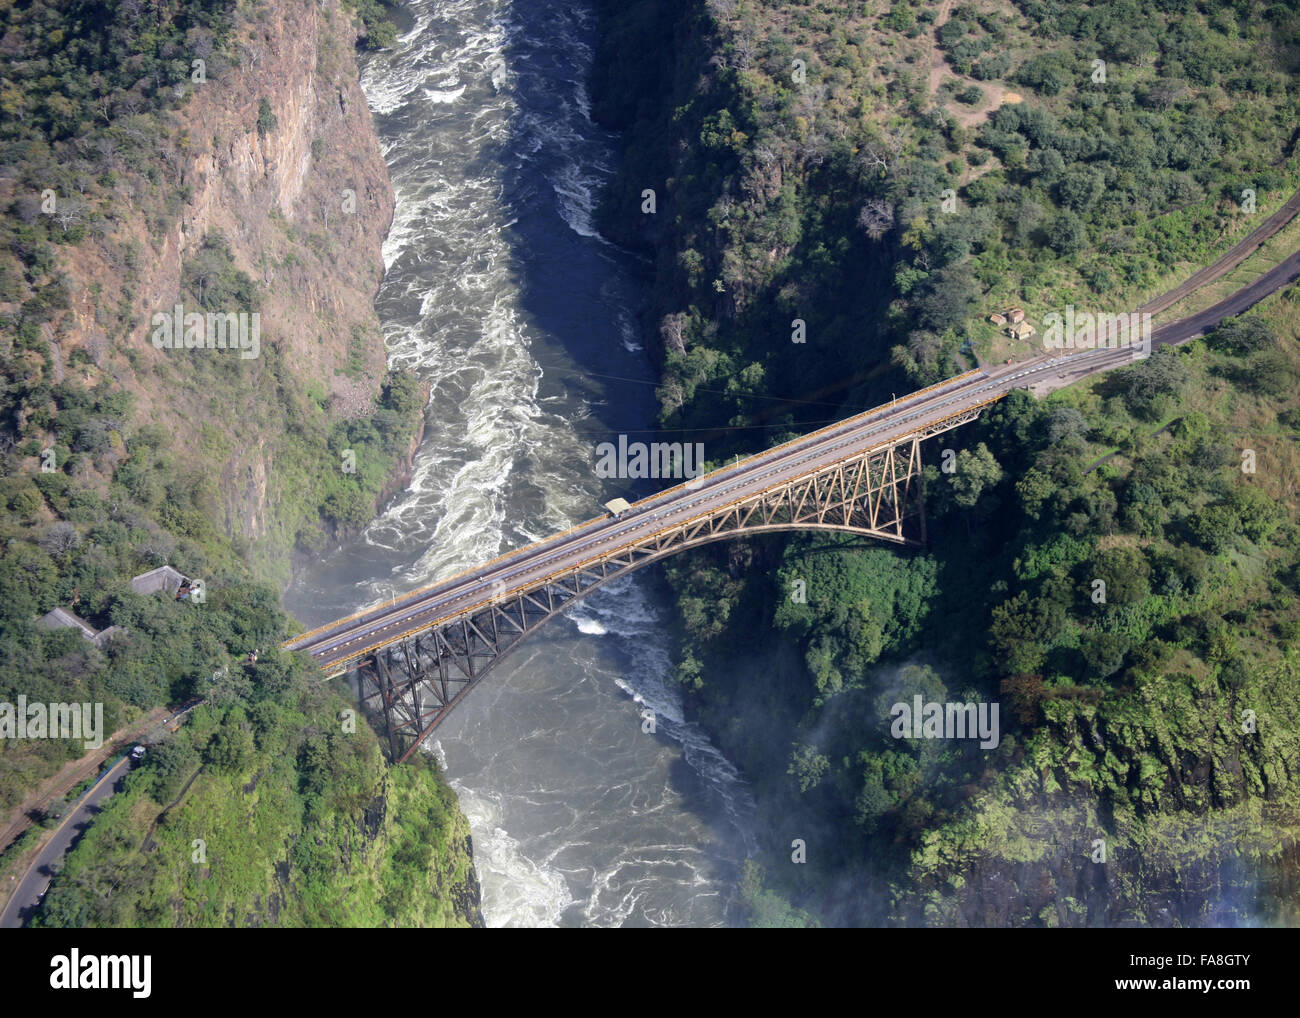 The Bridge Victoria Falls Zambia Aerial View Stock Photo